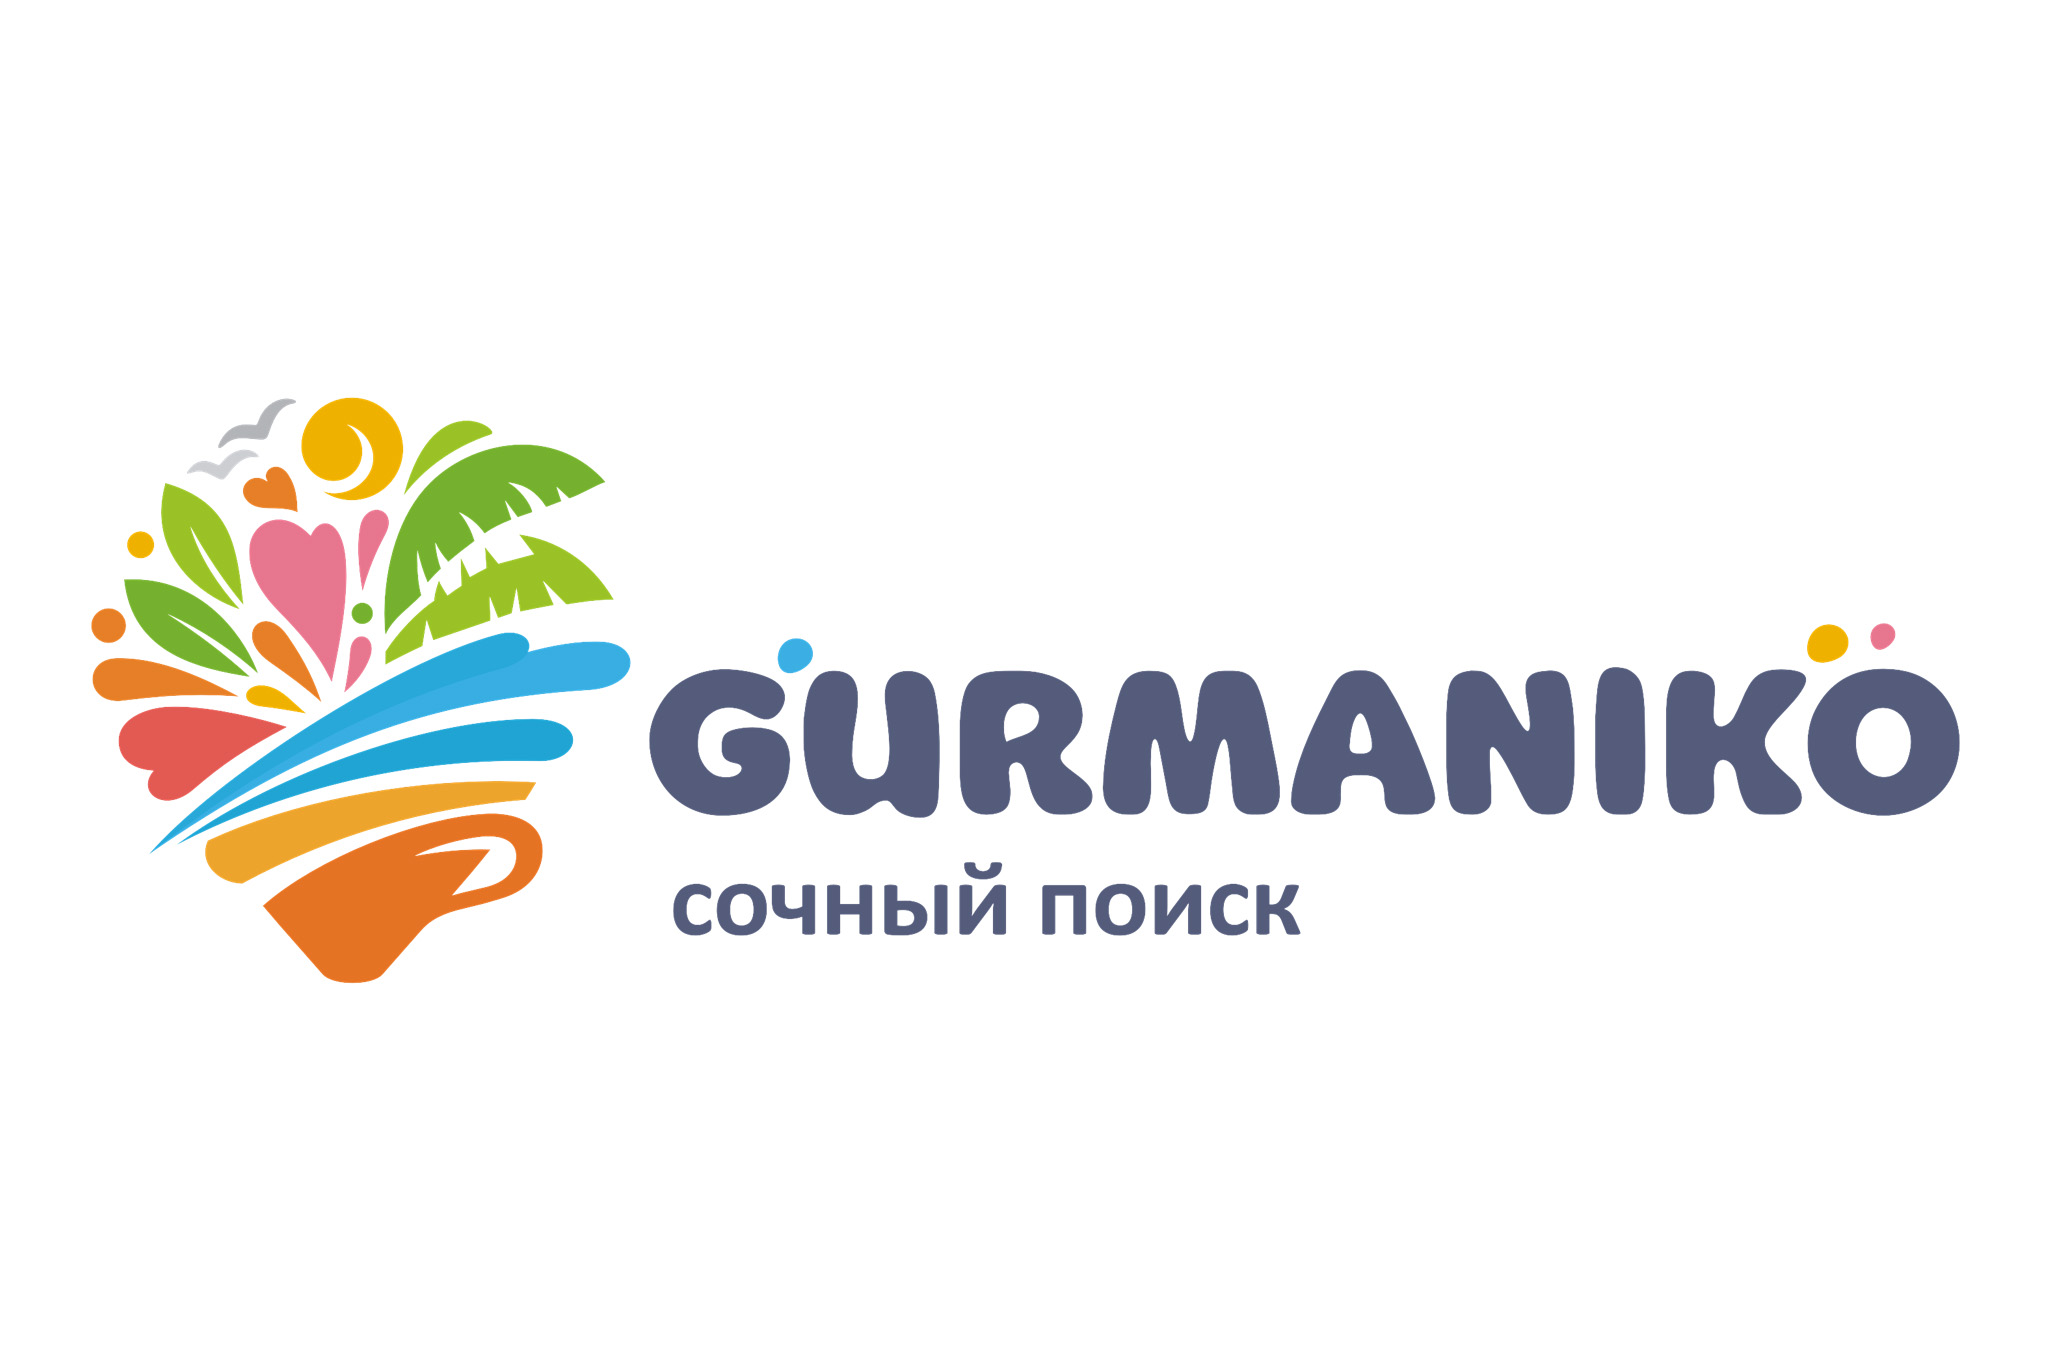 Gurmaniko.com - новый проект в городе Сочи